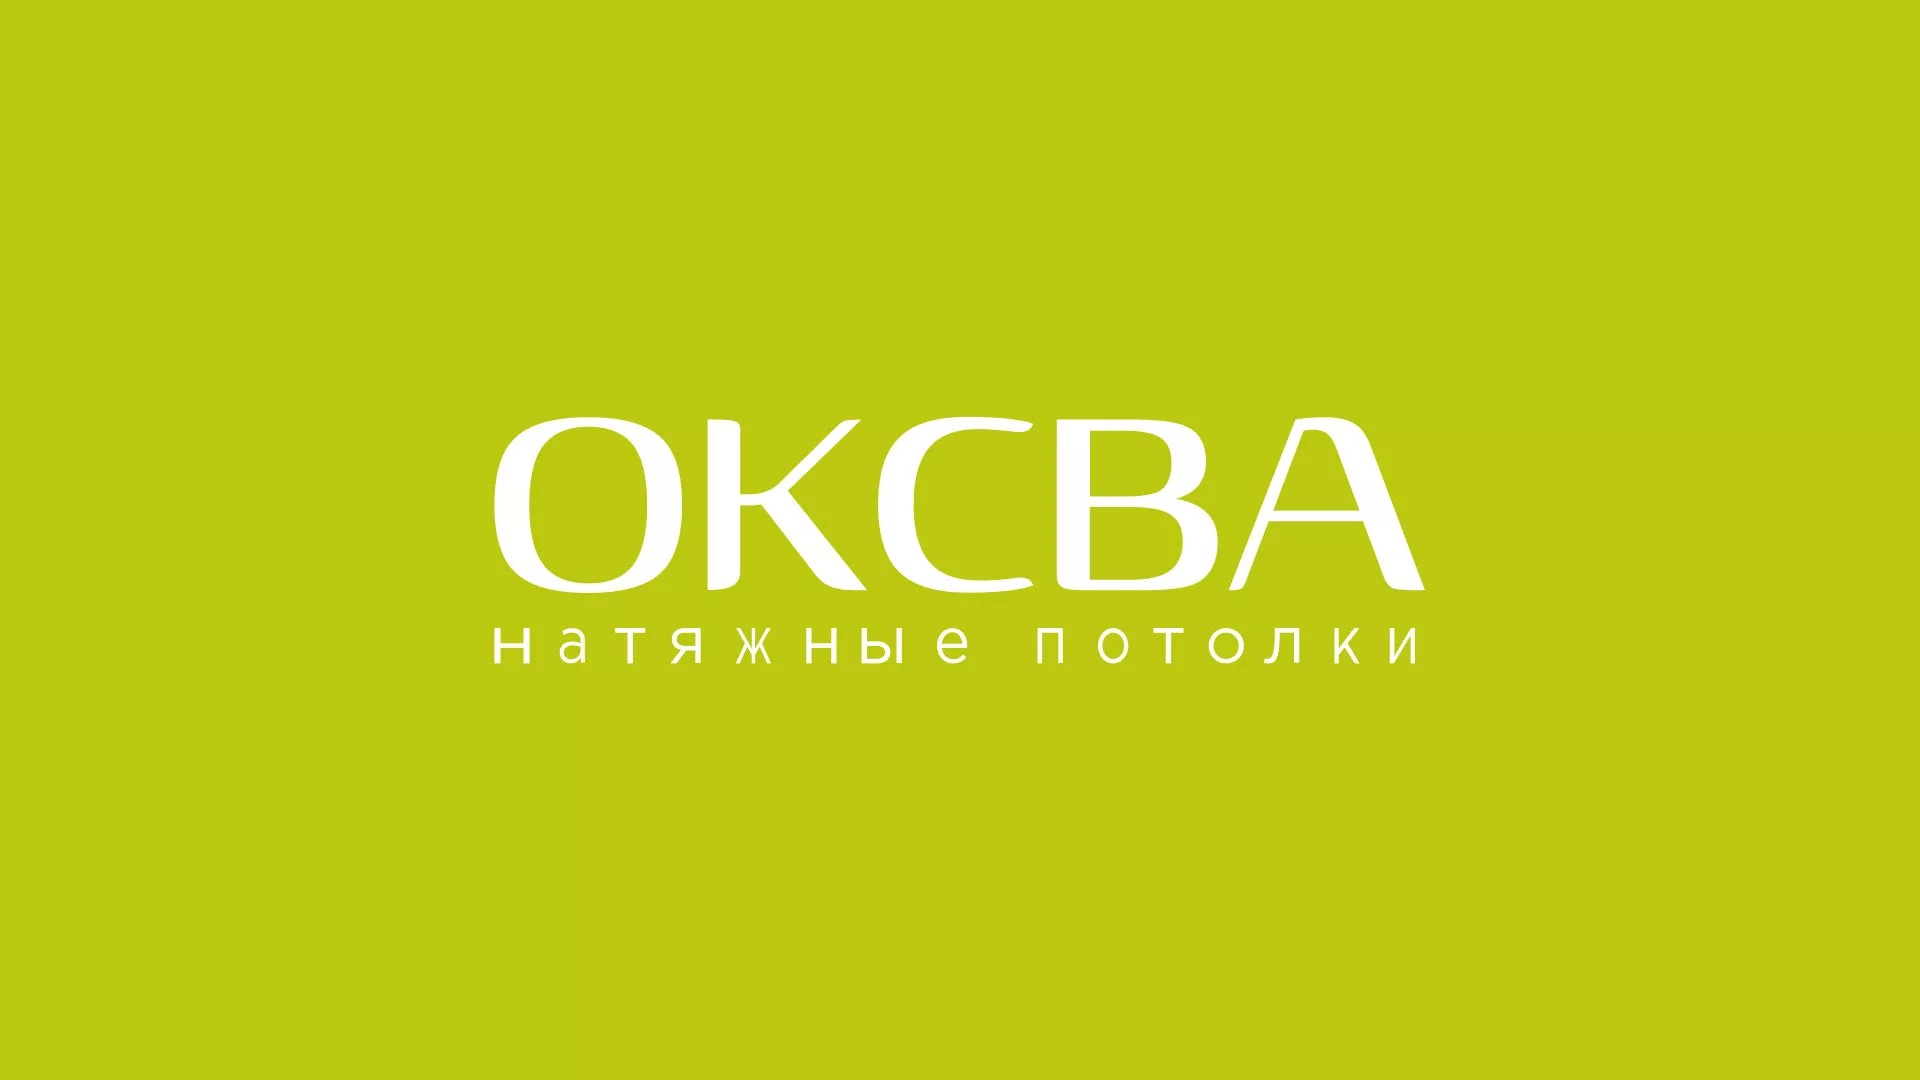 Создание сайта по продаже натяжных потолков для компании «ОКСВА» в Одинцово